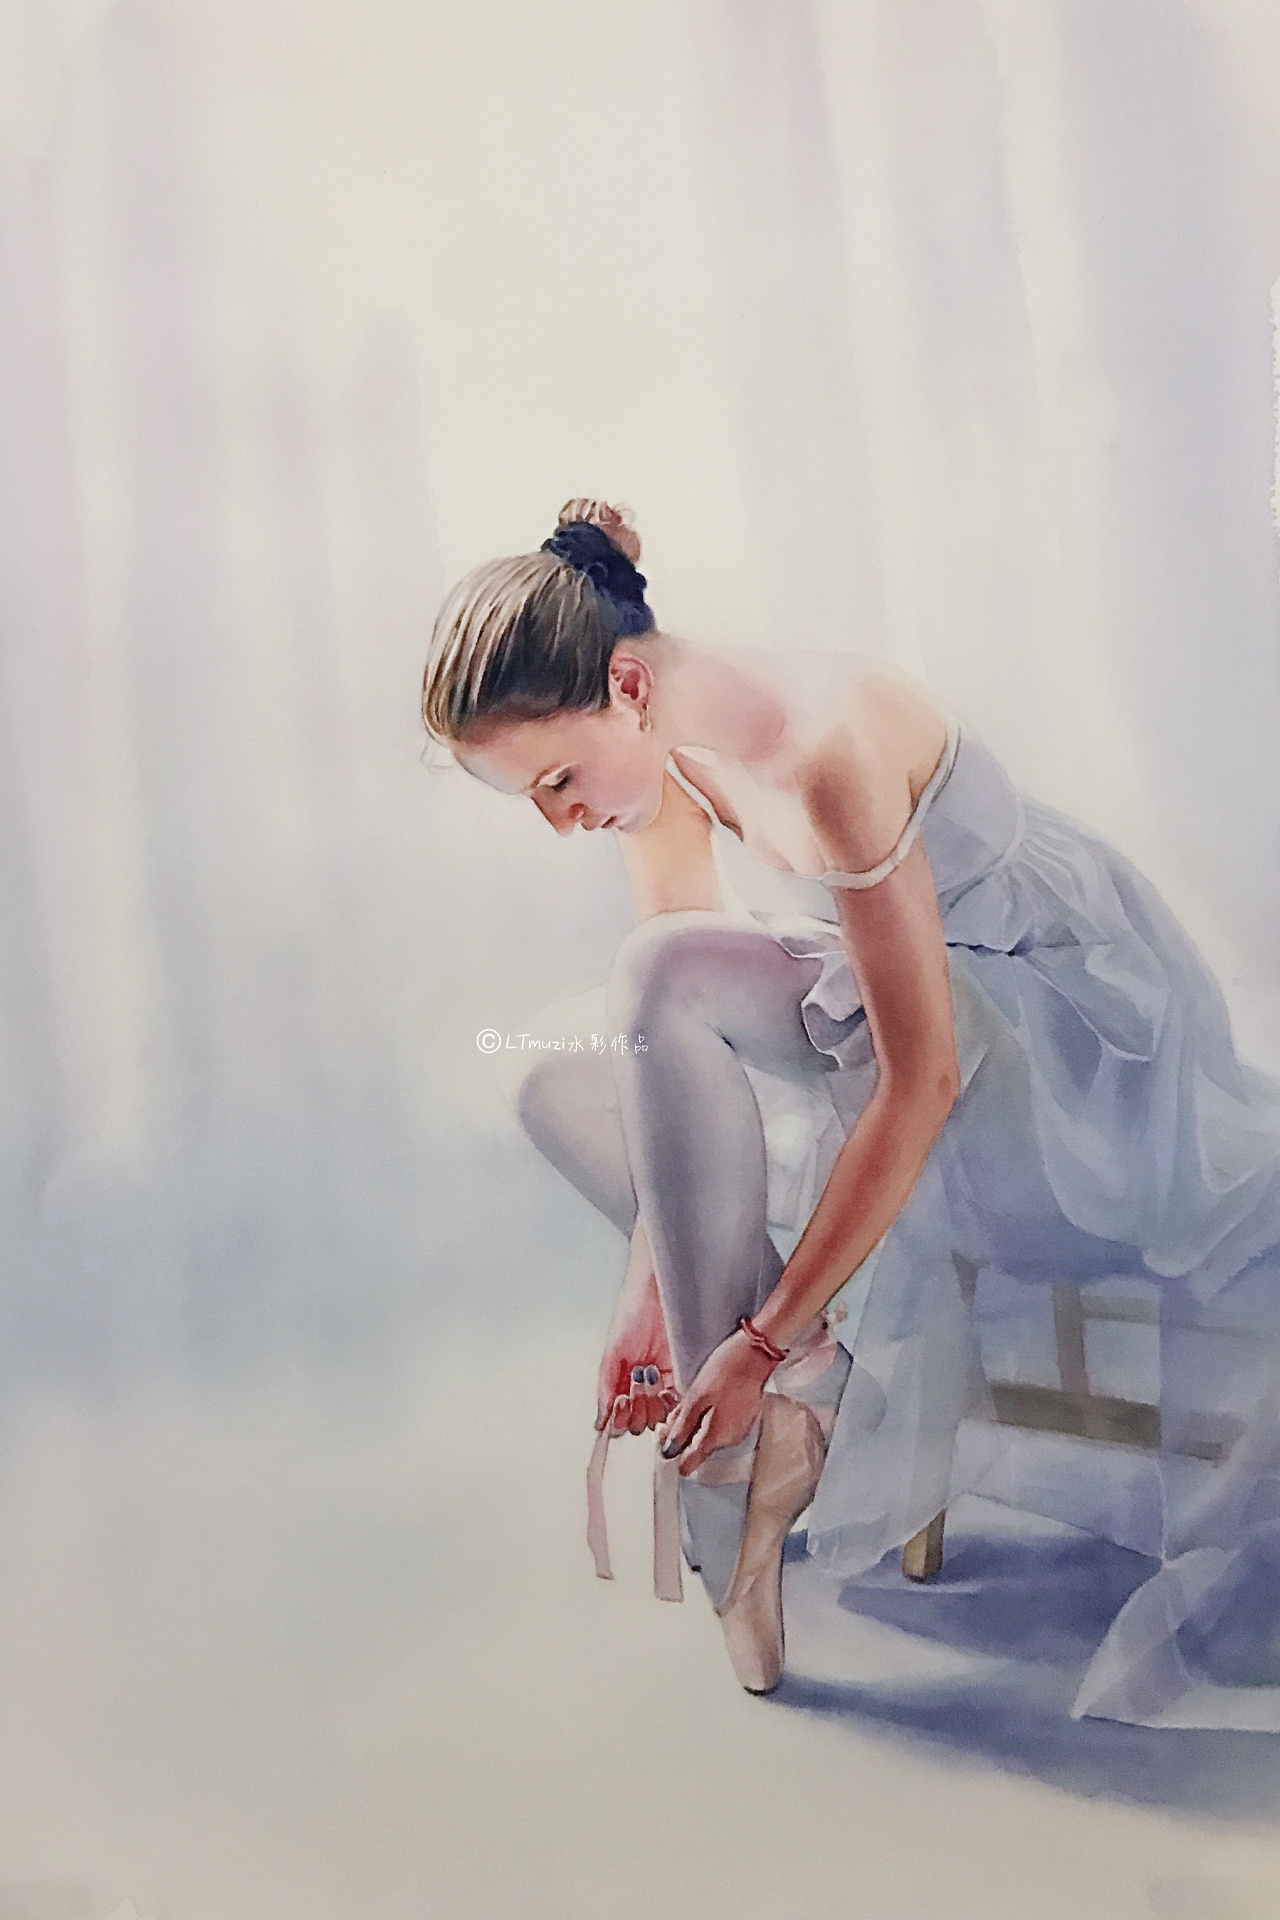 芭蕾舞女孩水粉画图片